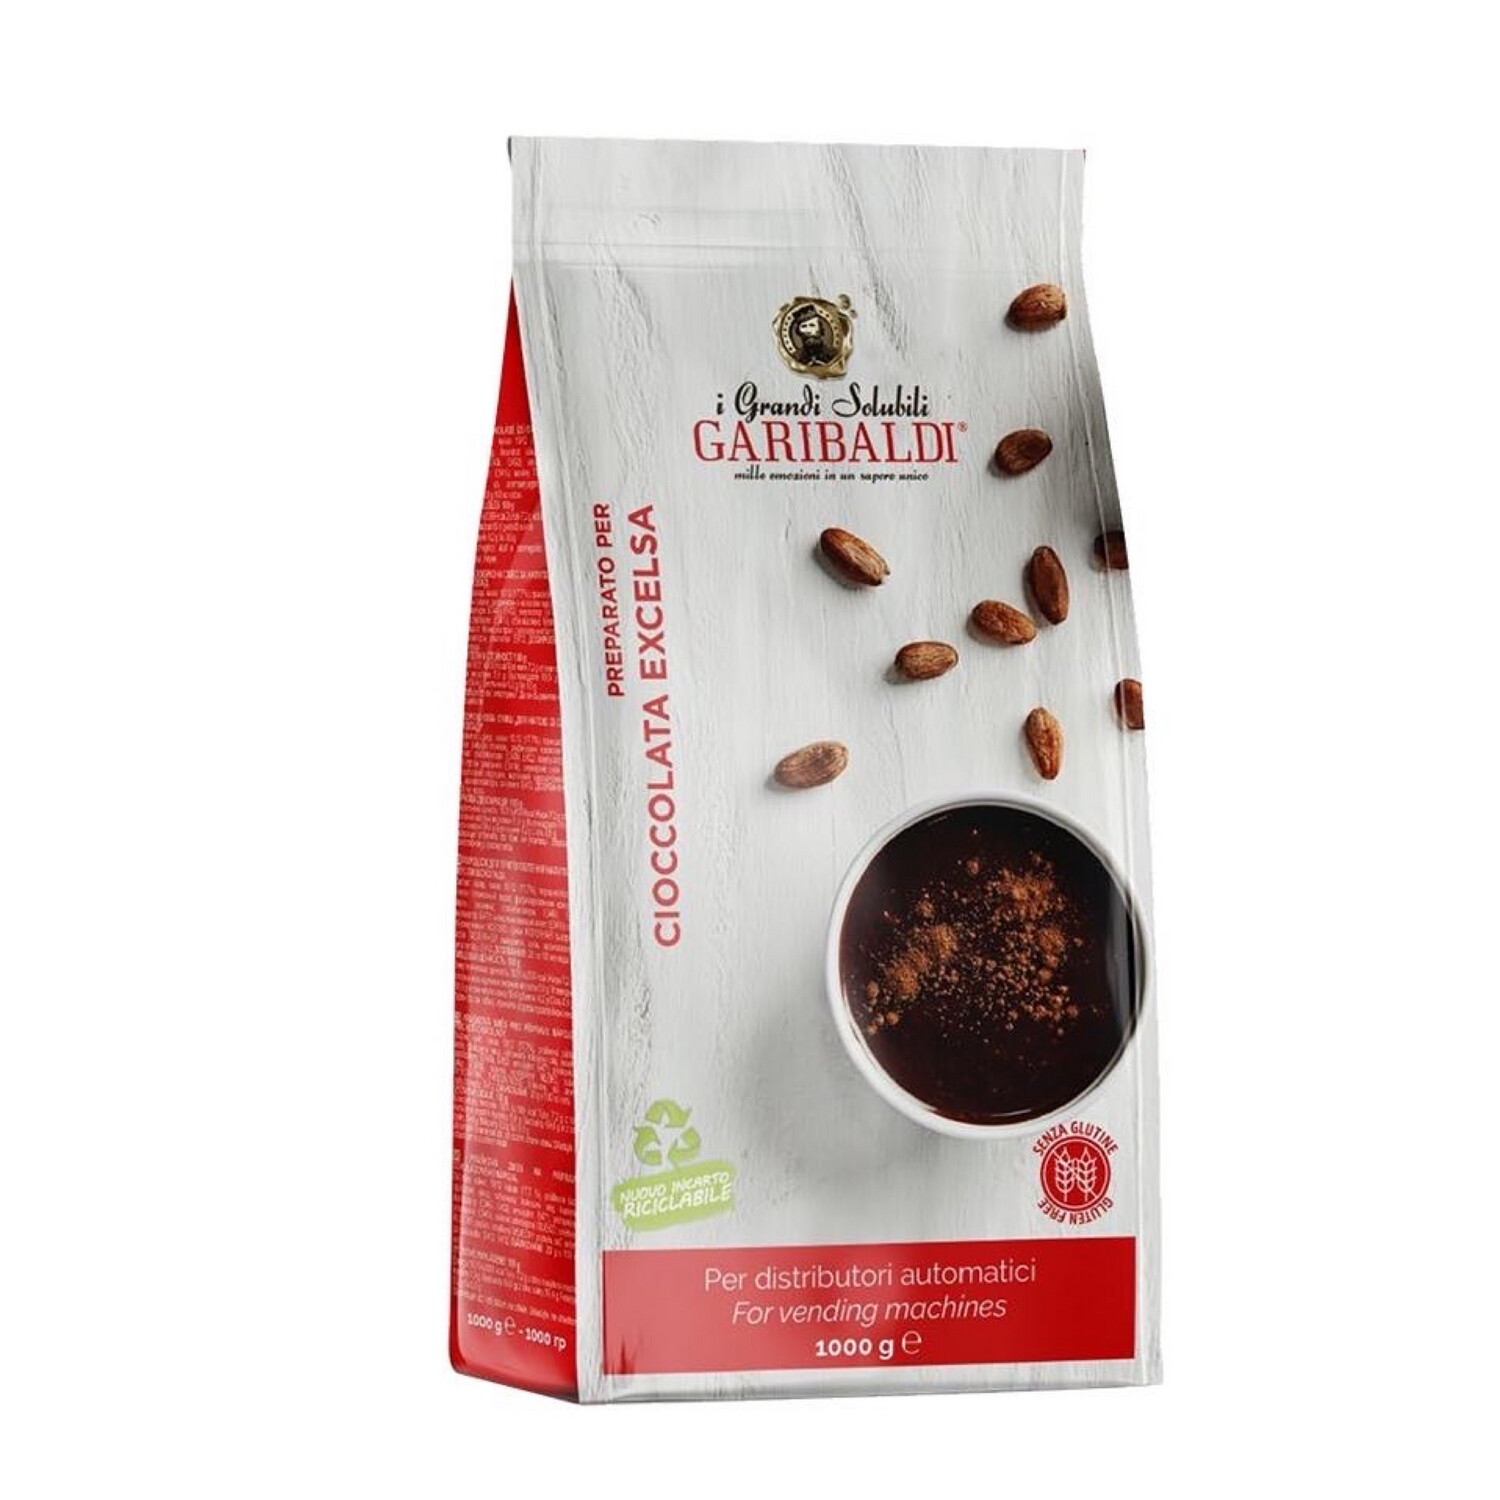 Garibaldi Hot Chocolate Premium Excelsa 1 kg